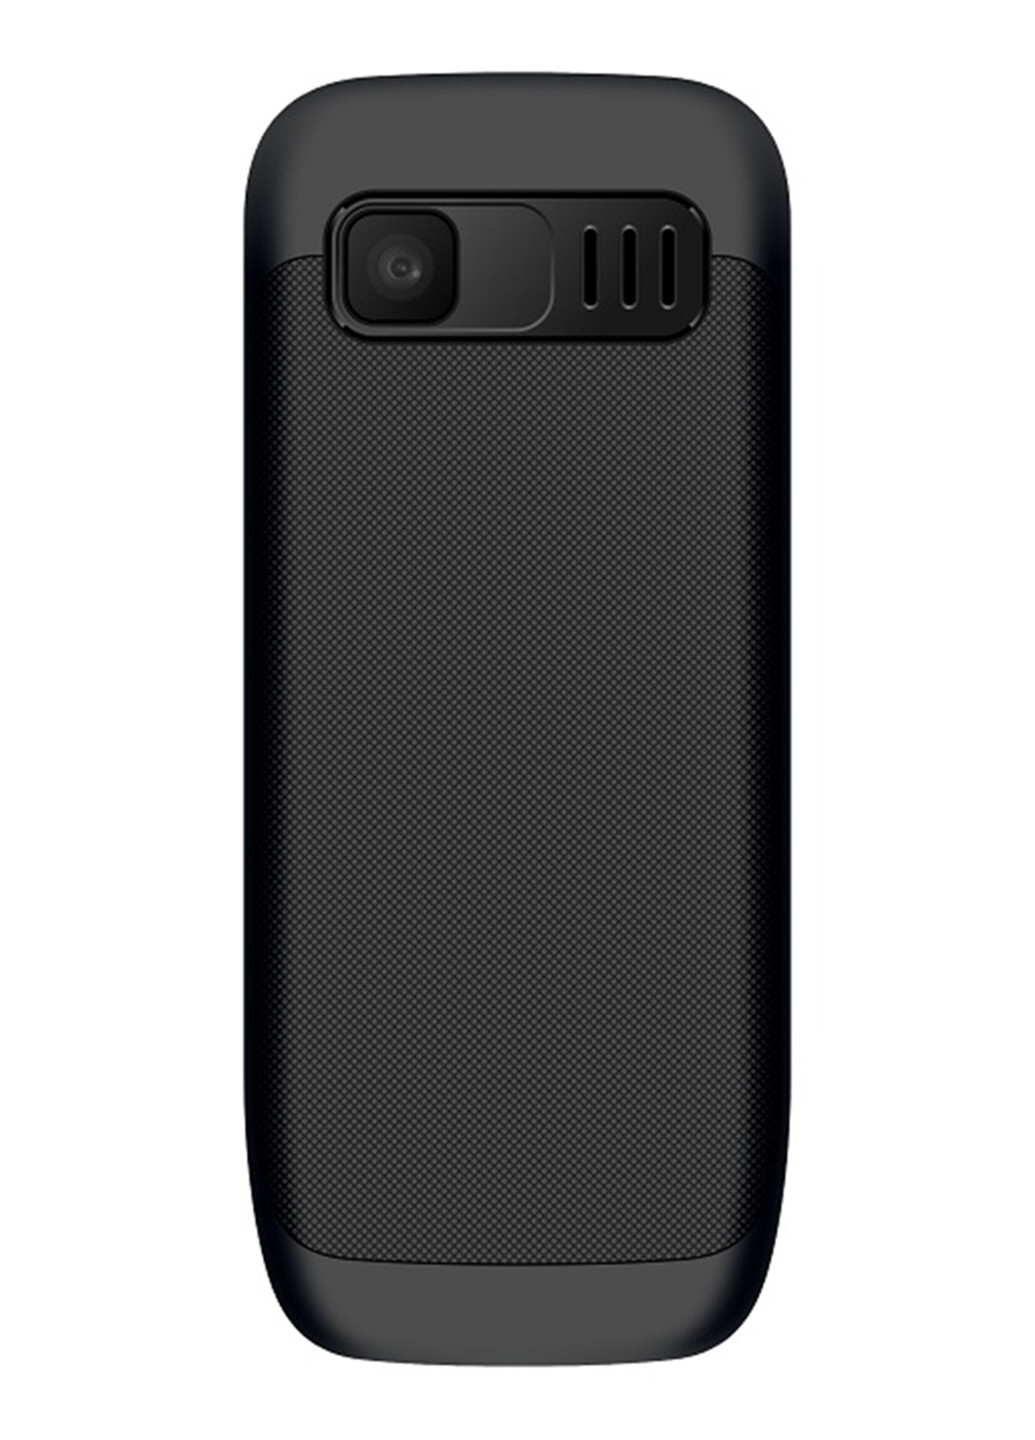 Мобільний телефон Maxcom mm134 black (132824468)